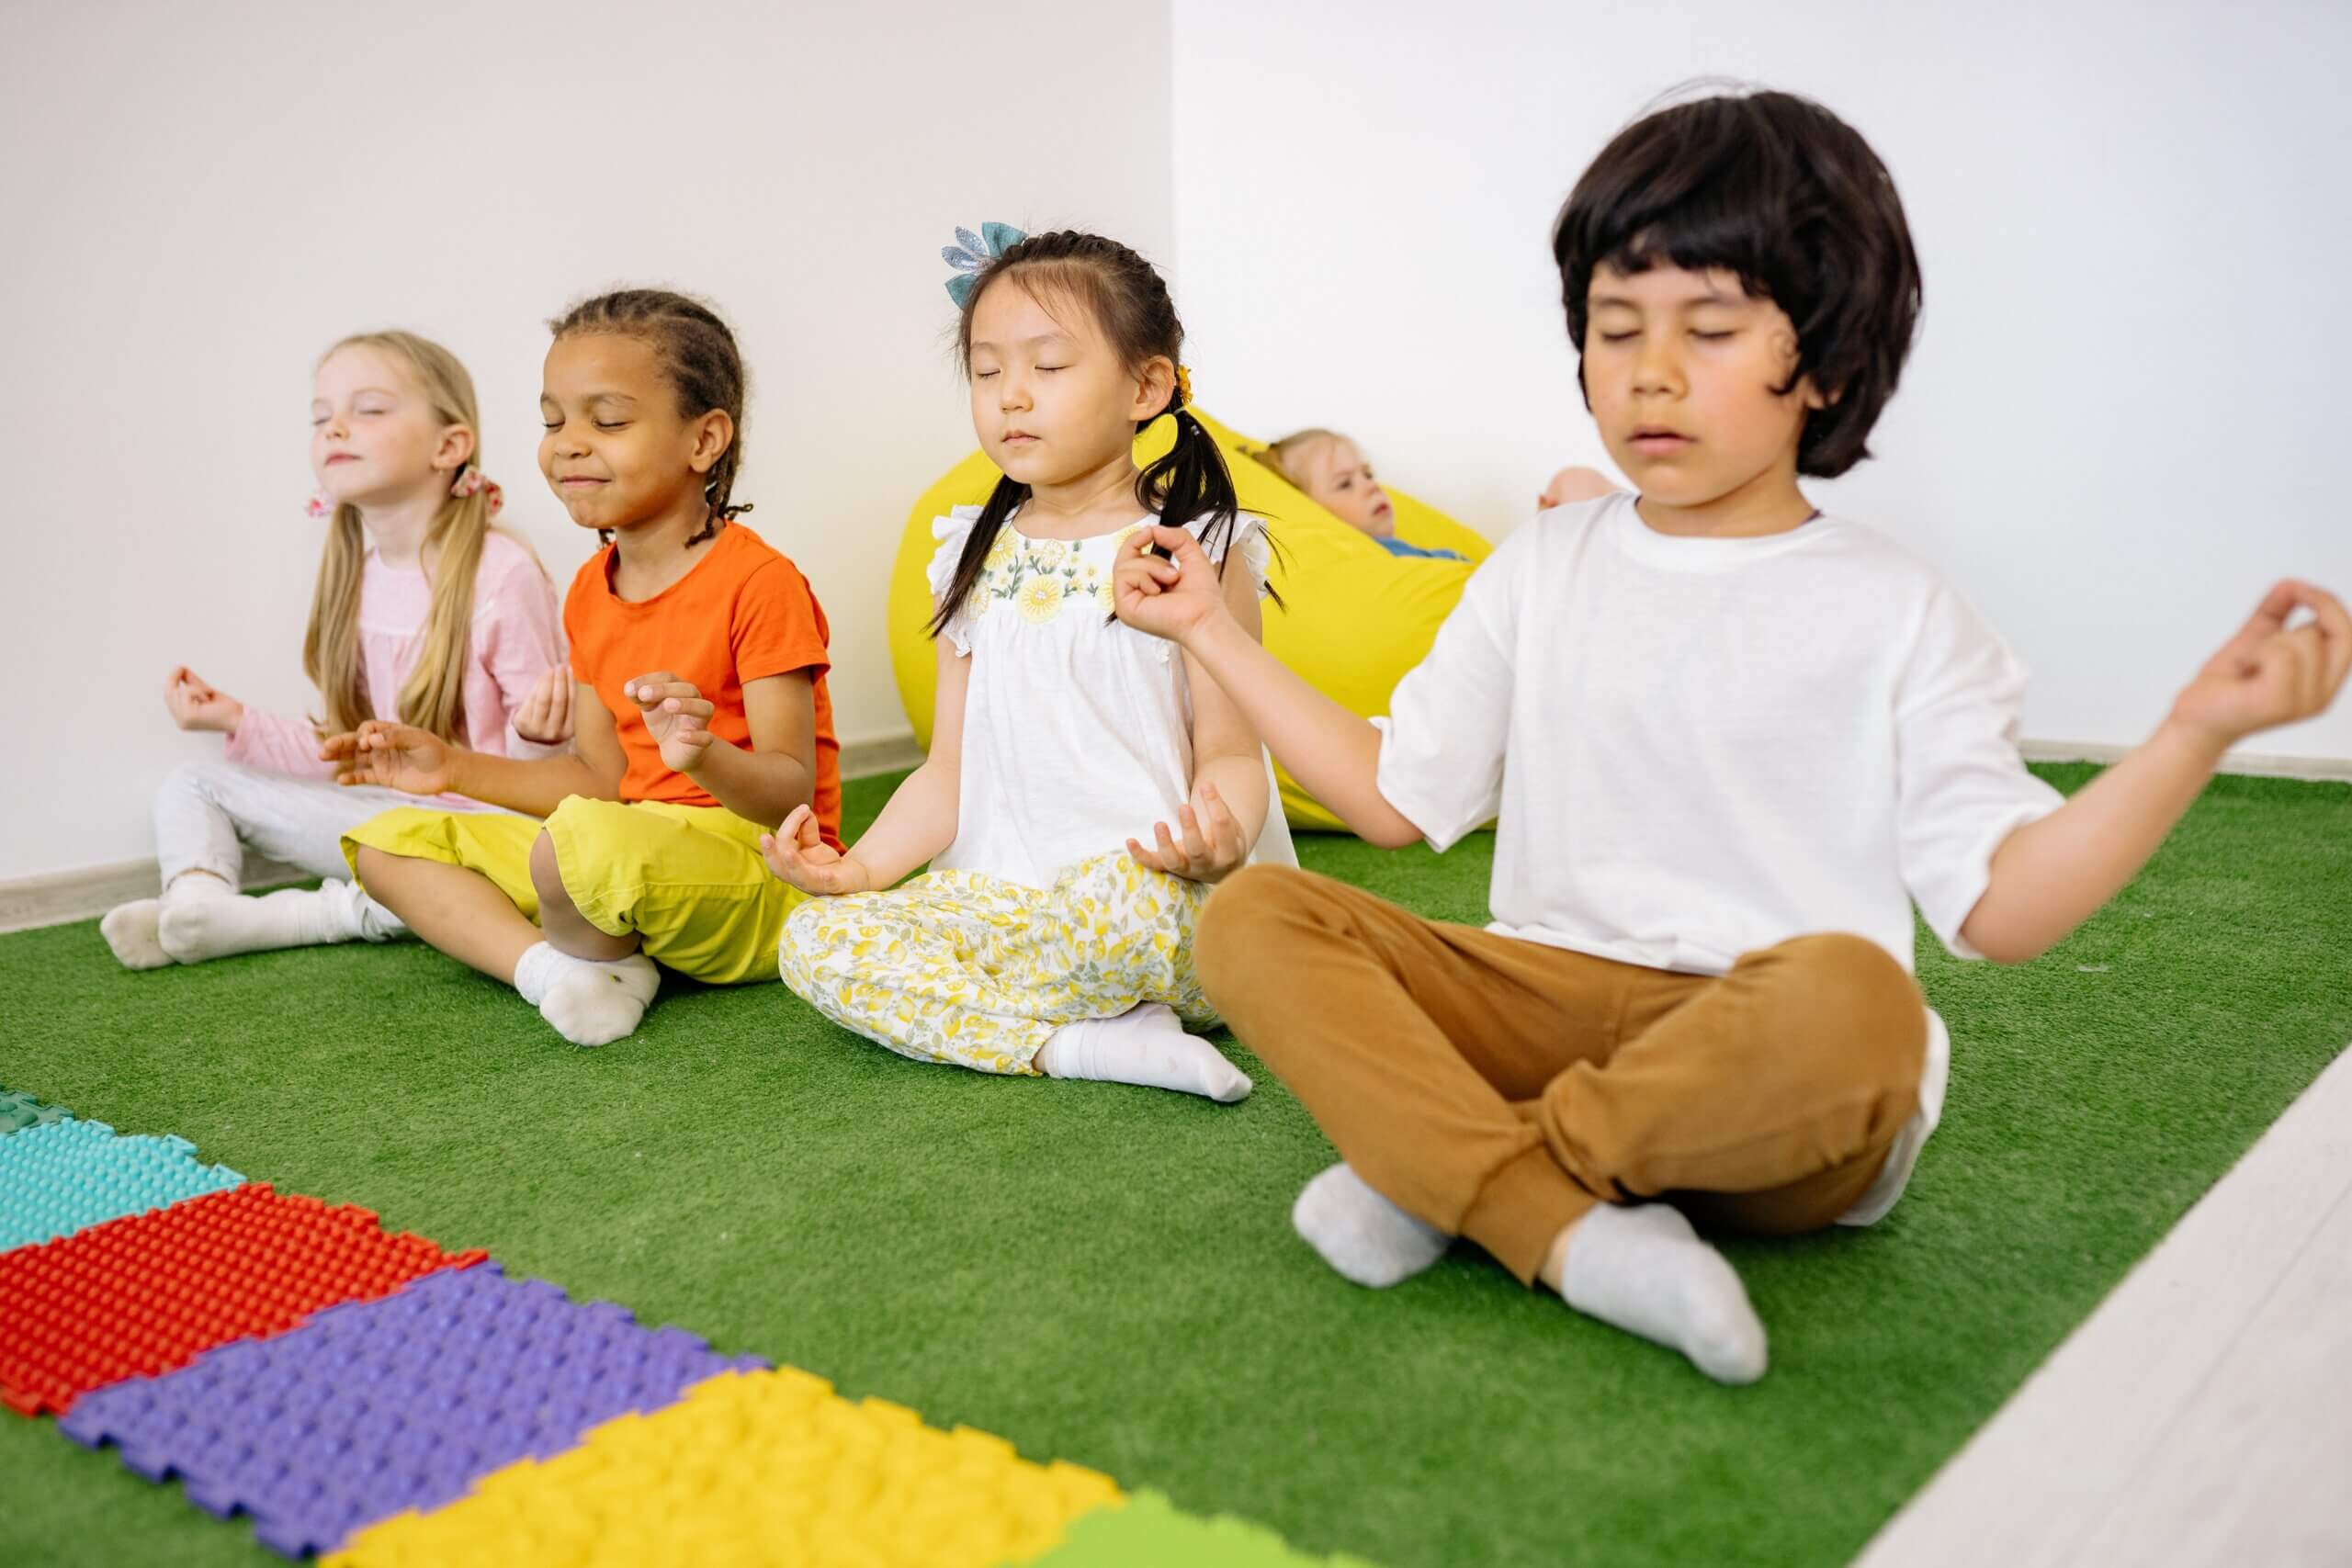 Teaching Yoga to Children